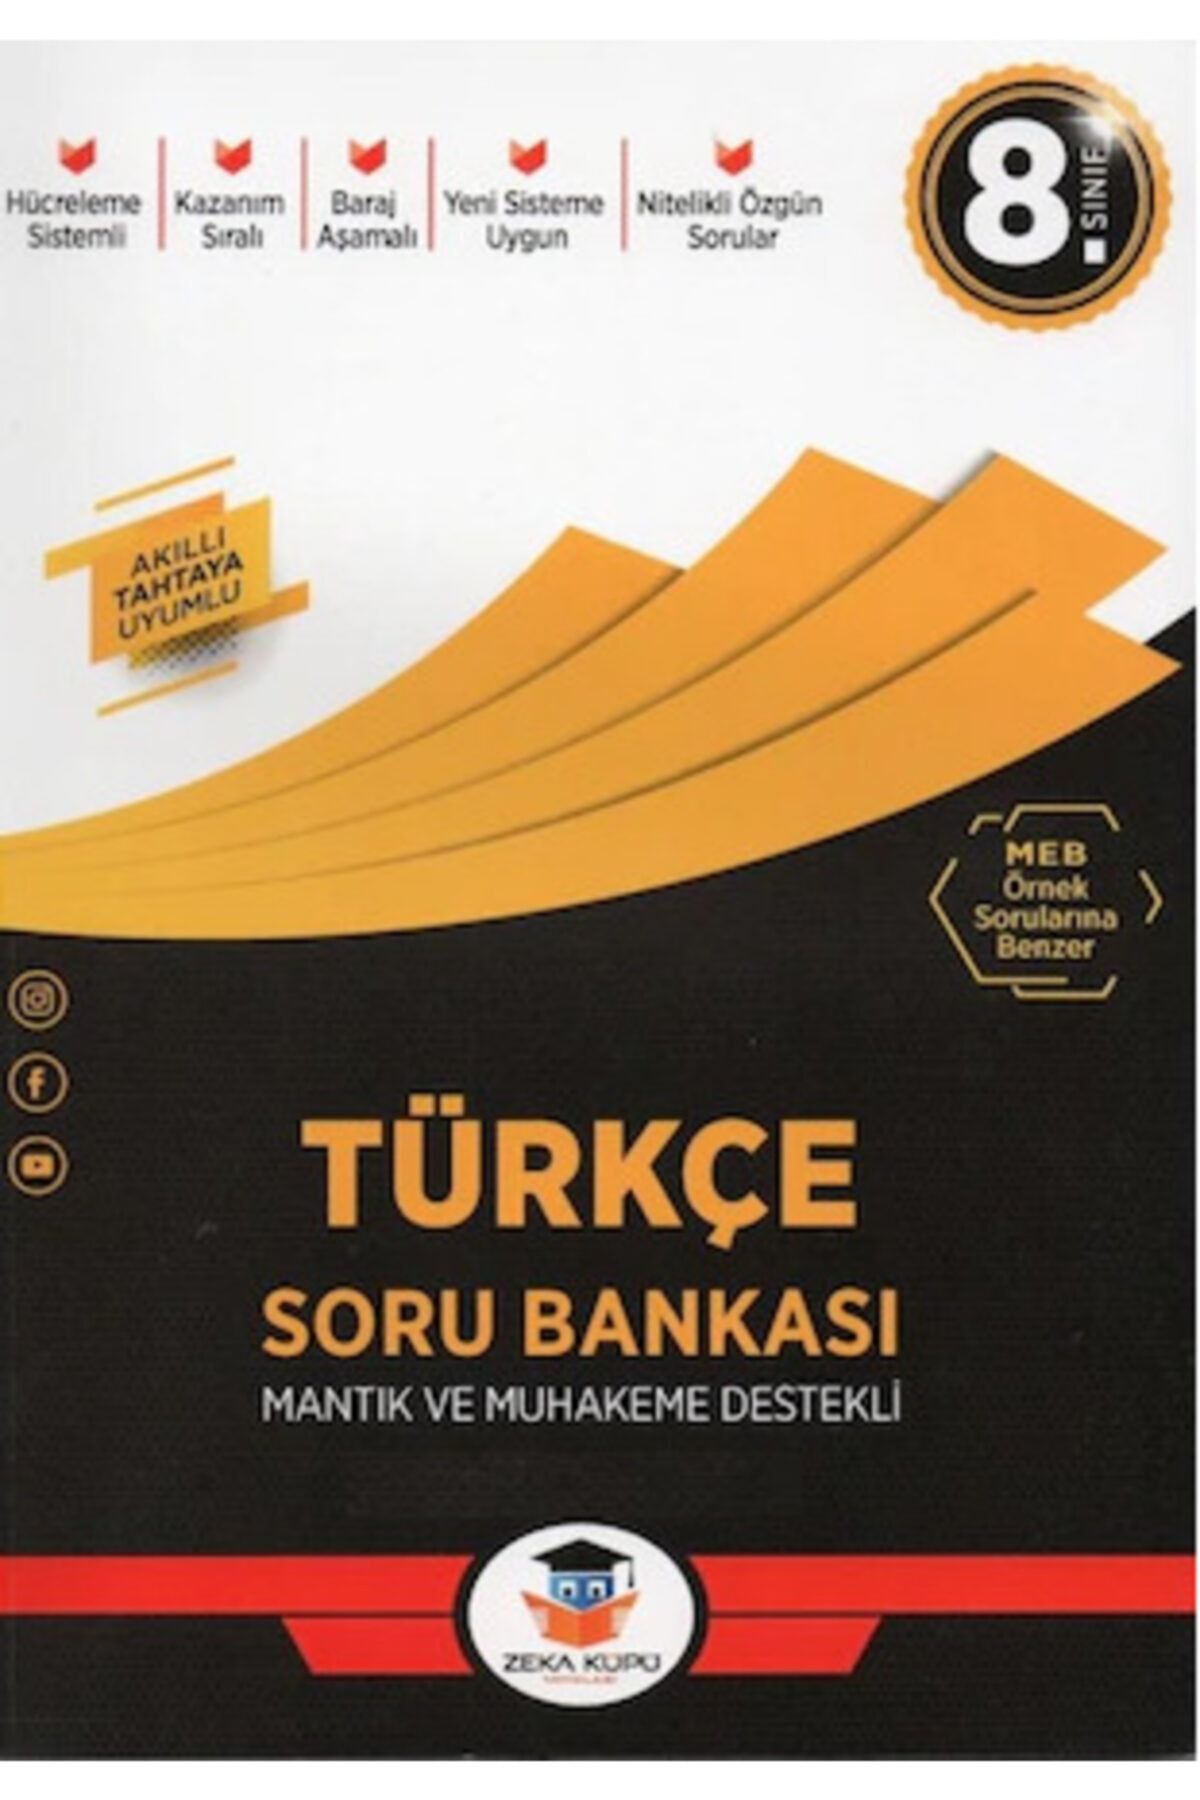 Zeka Küpü Yayınları 8.sınıf Lgs Türkçe Soru Bankası - 2021 Lgs Kitapları